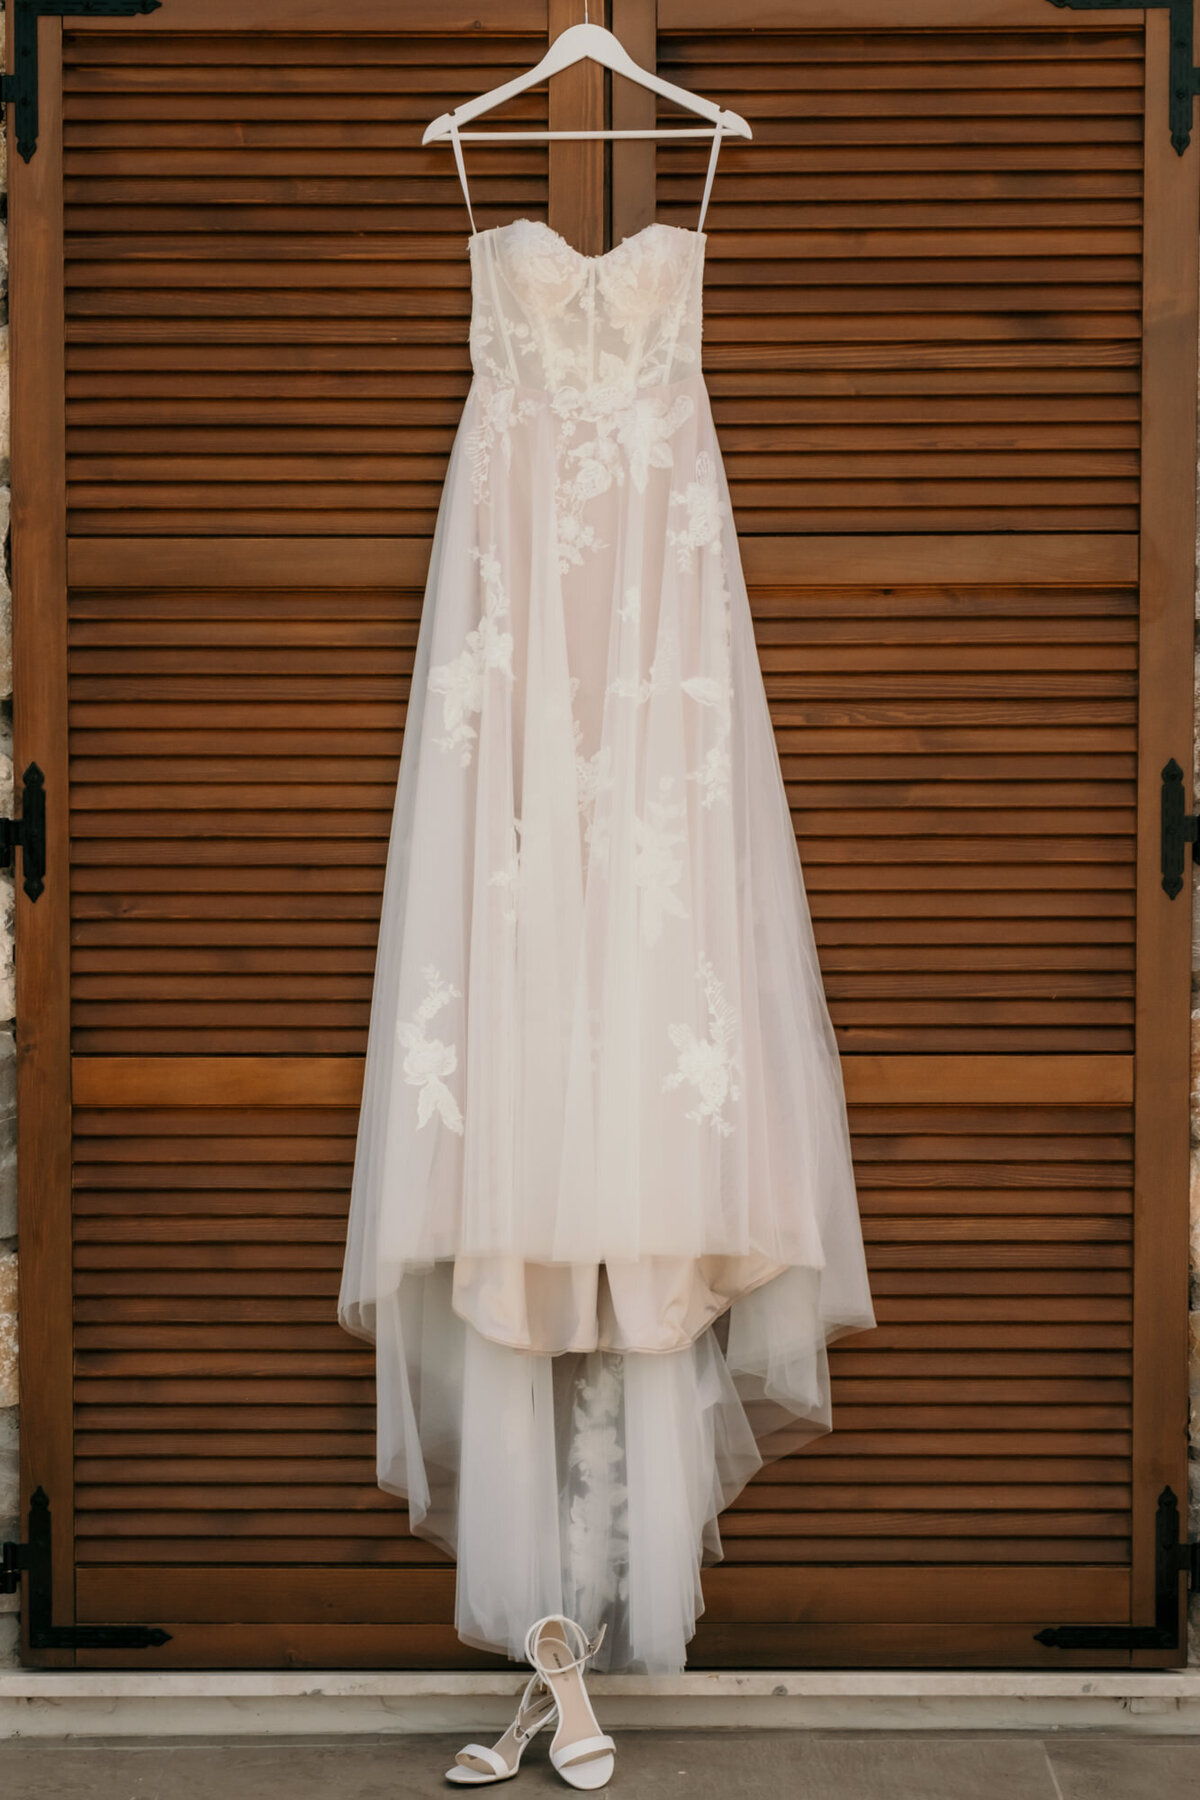 Das trägerlose Brautkleid hängt vor einem Holzfensterladen. Am Boden stehen die Brautschuhe.